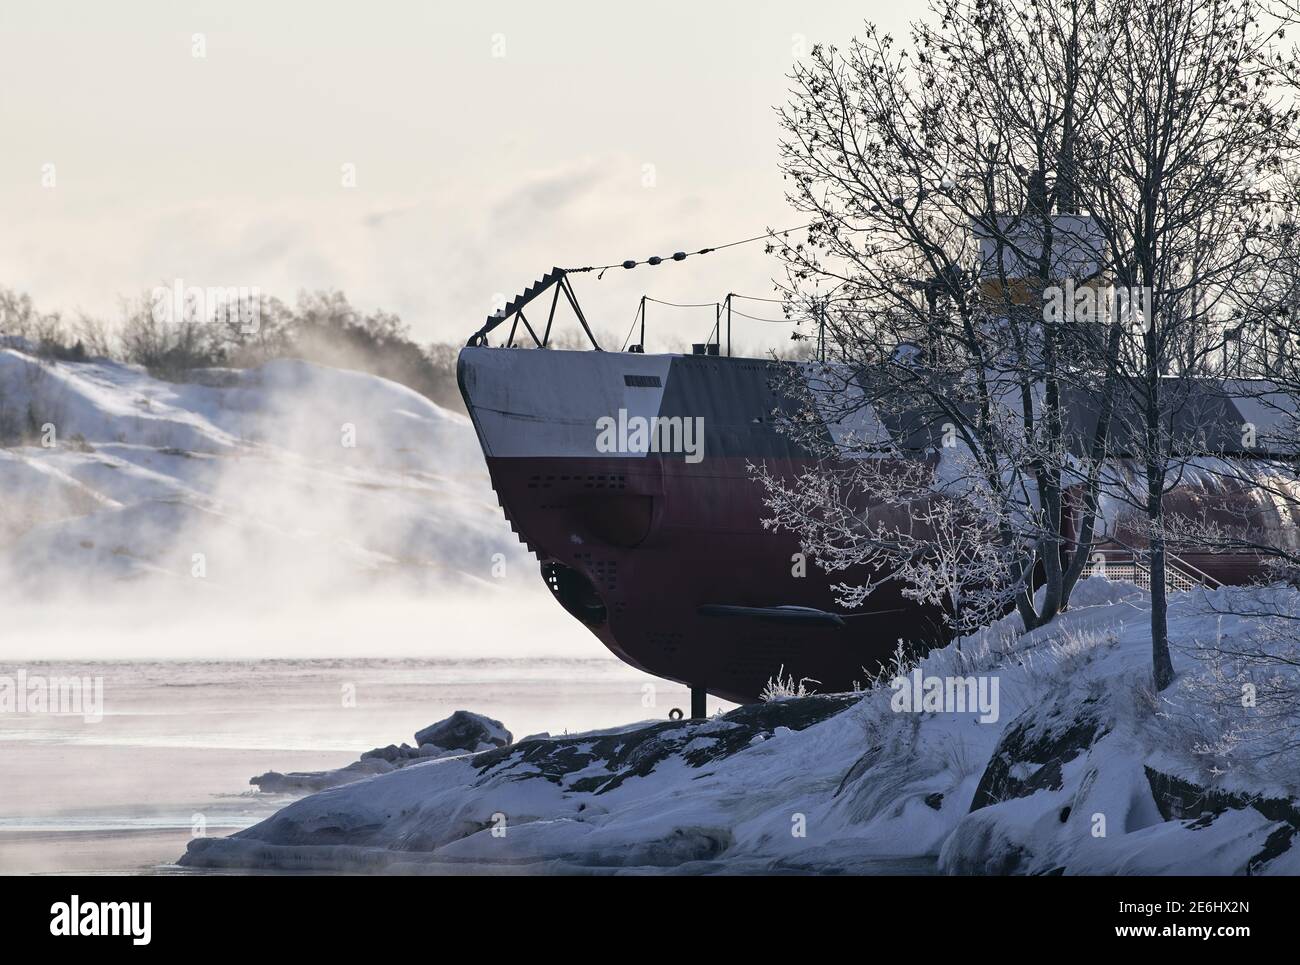 Helsinki, Finlande - 15 janvier 2021 : un sous-marin de musée finlandais de l'ère WW II Vesikko dans l'île forteresse de Suomenlinna avec arbres gelés et arche enneigée Banque D'Images